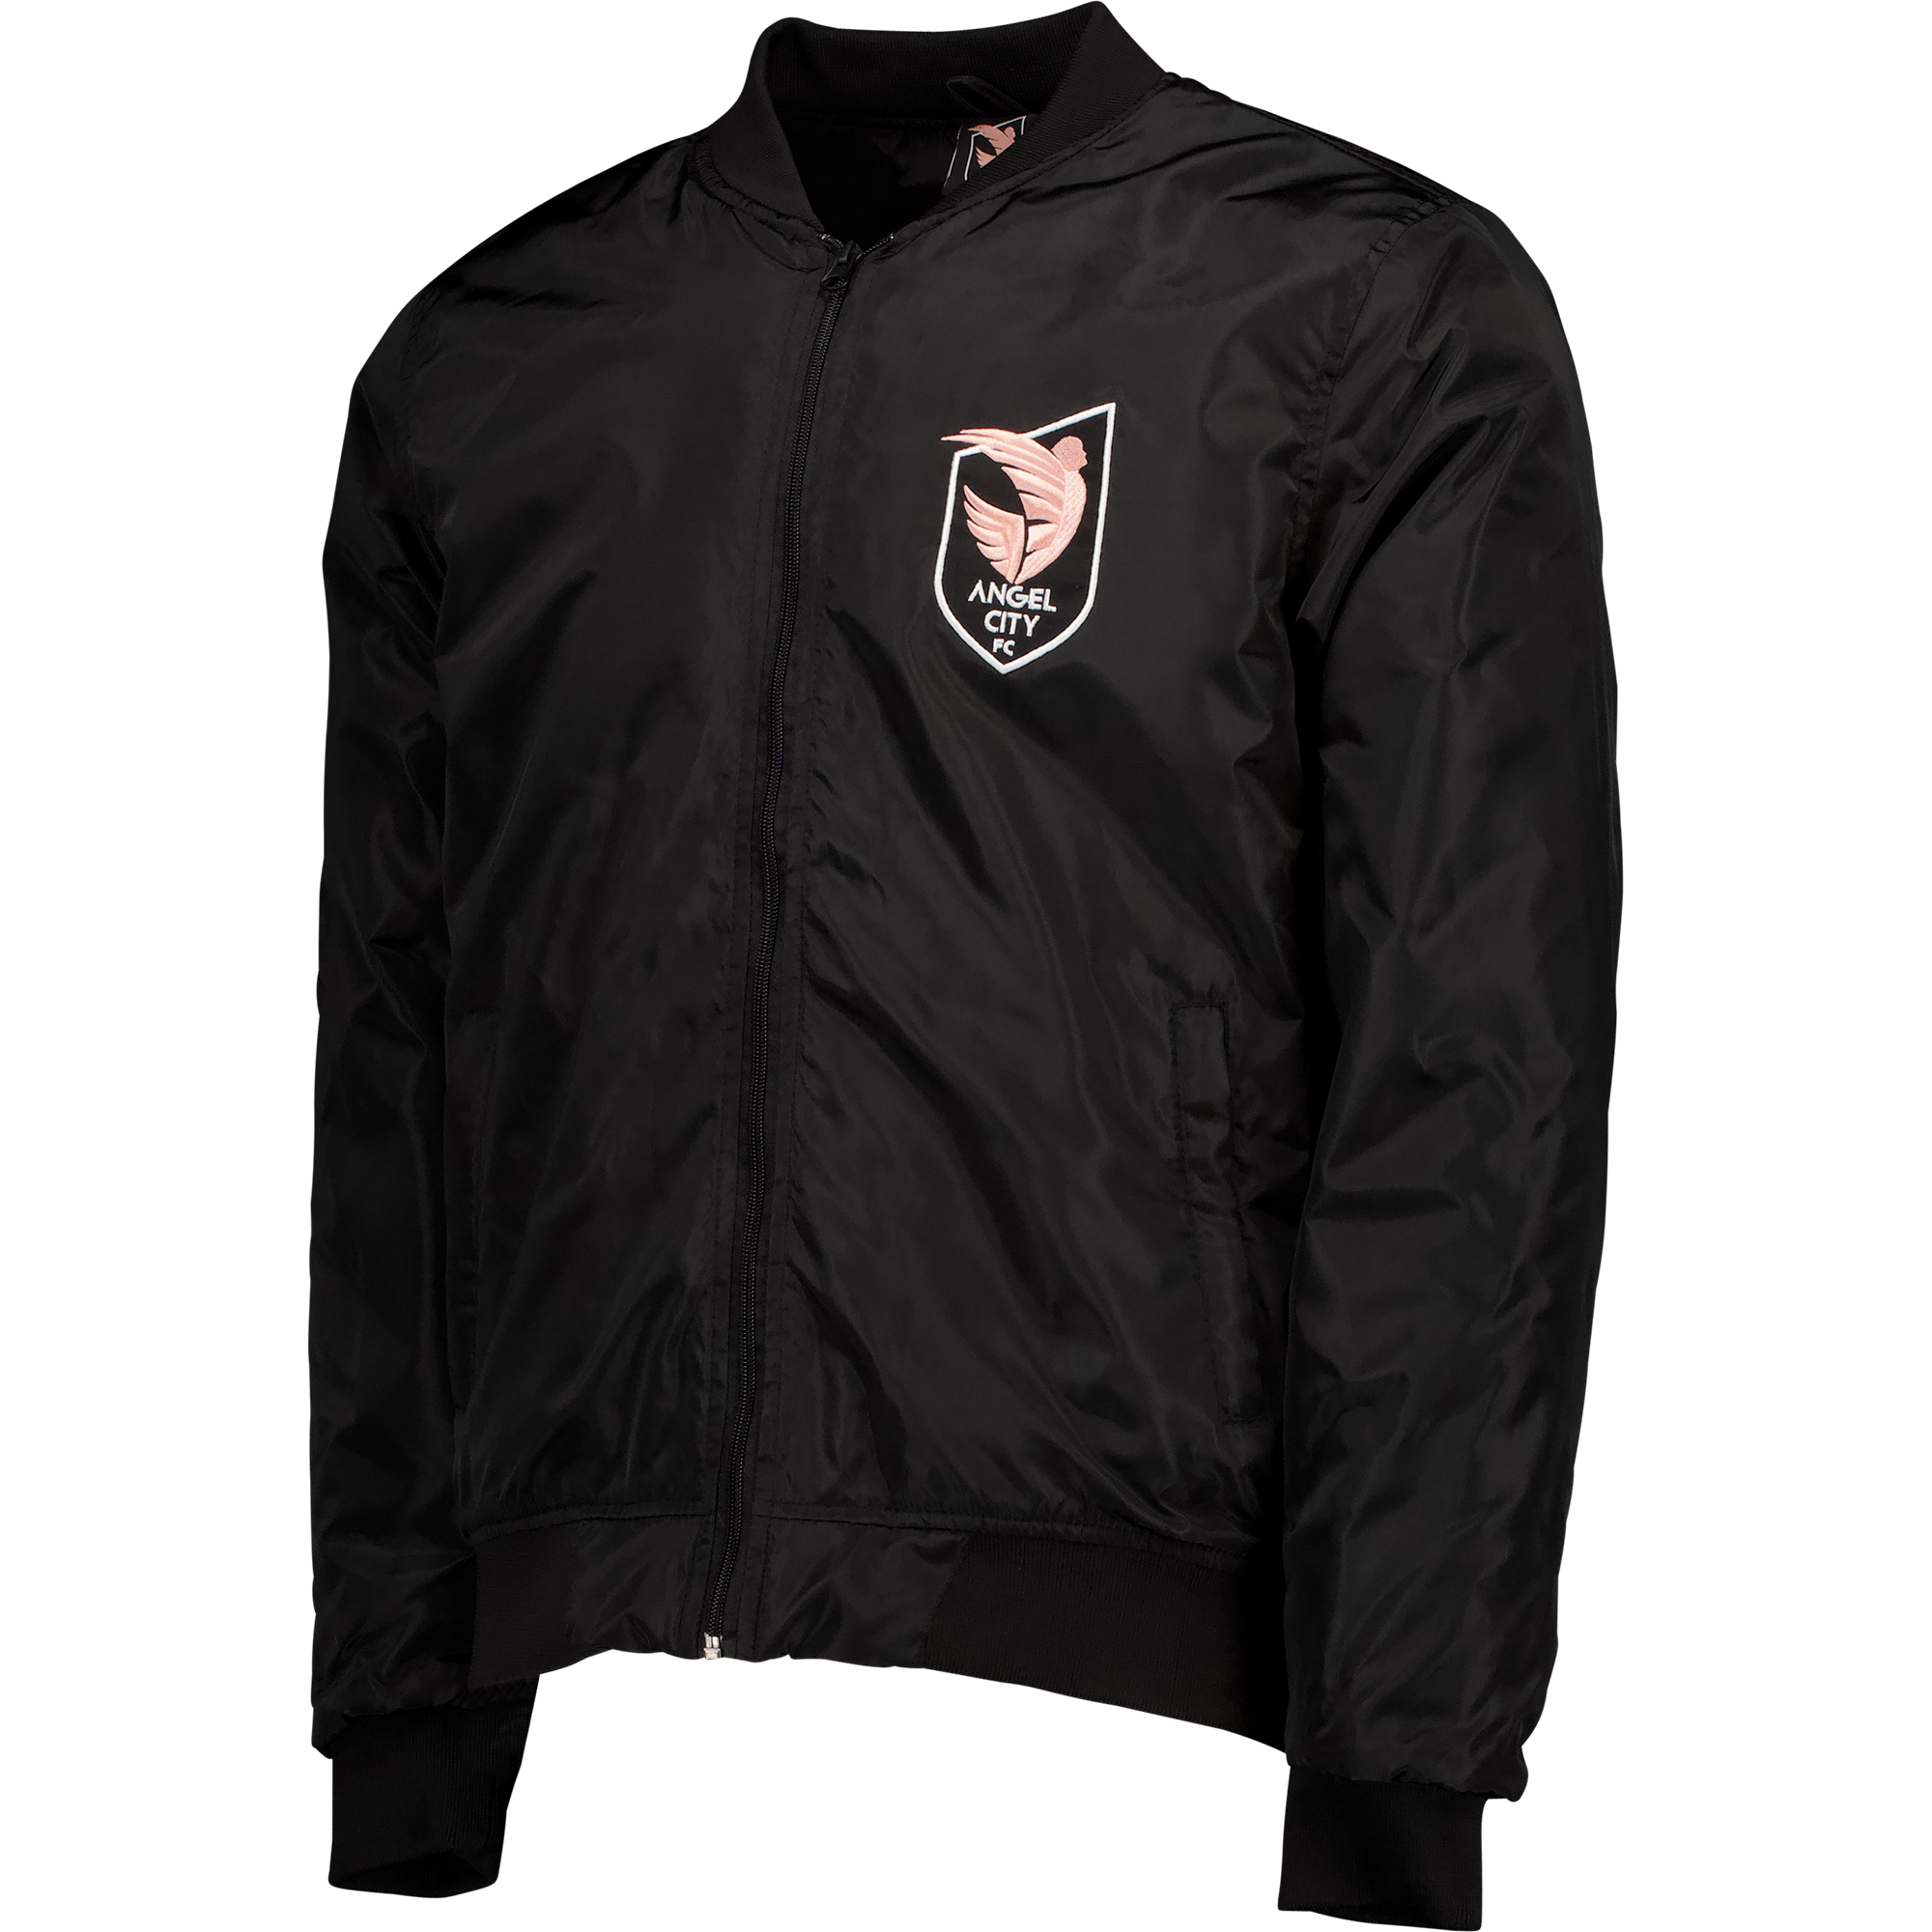 Angel City FC Unisex Old English Black Bomber Jacket